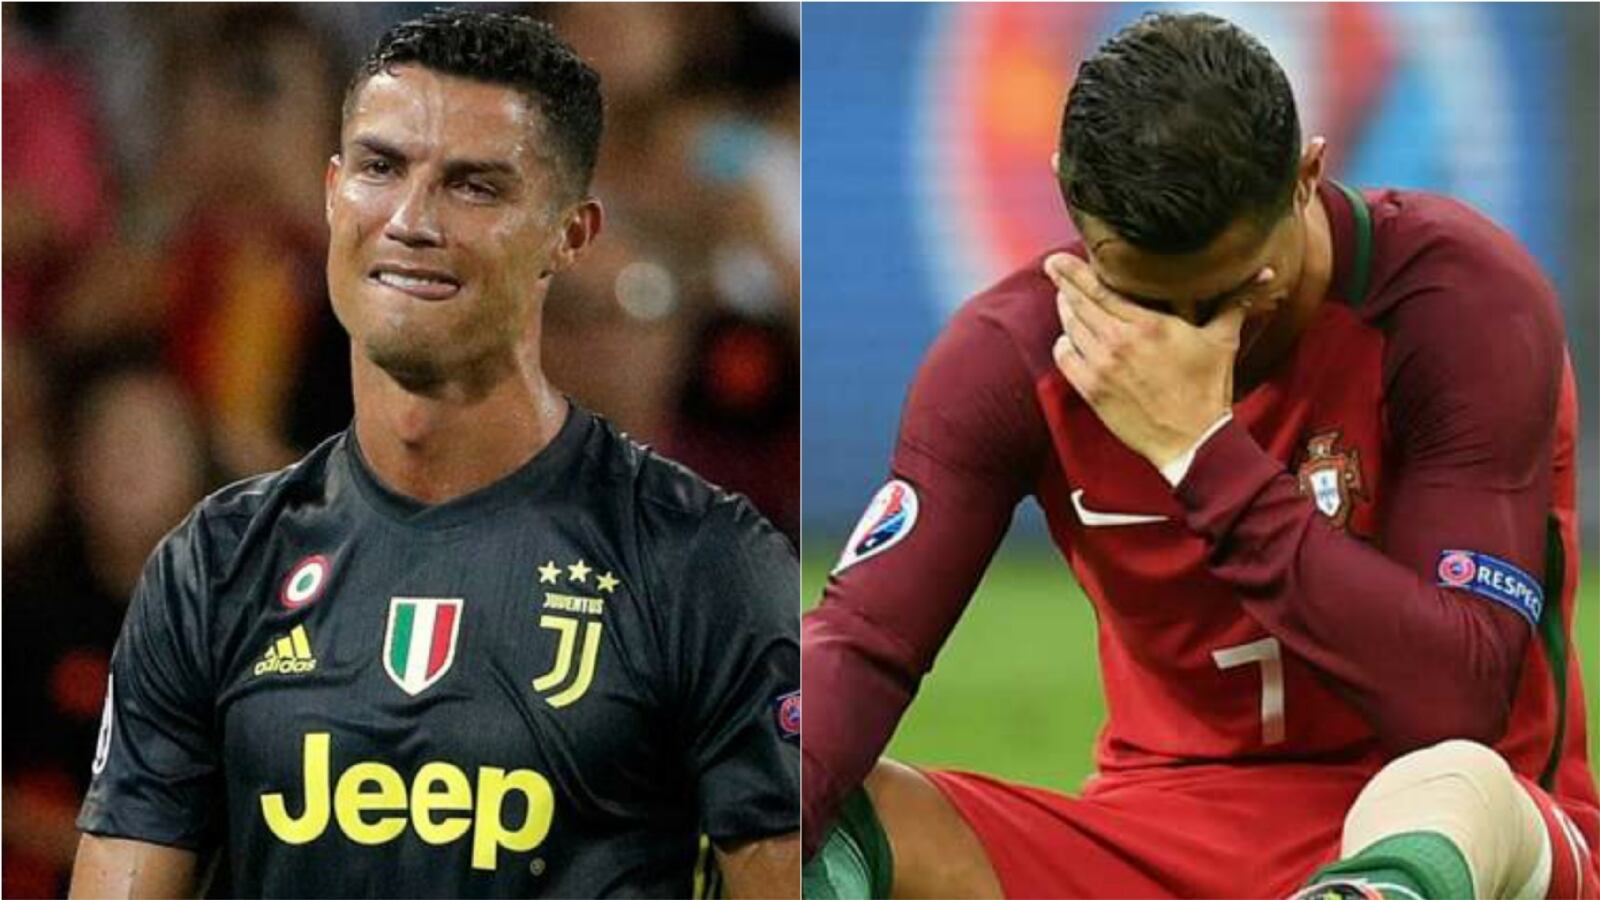 En el ojo del huracán: Cristiano Ronaldo metido en problemas con entidad gubernamental de Italia por este motivo